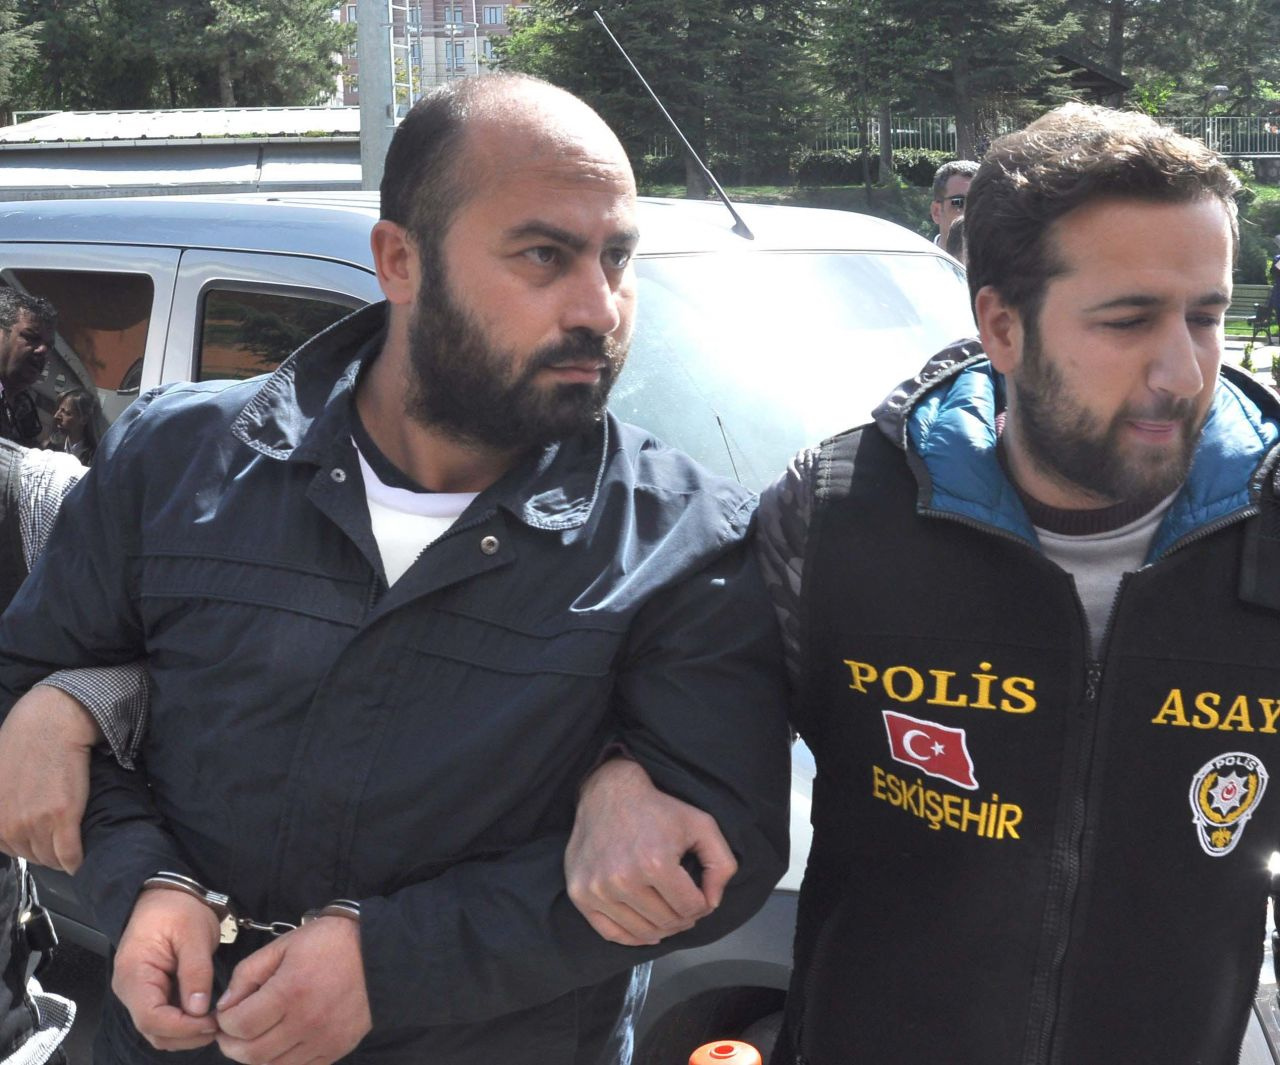 Eskişehir'de 4 akademisyeni öldüren Volkan Bayar 'Çok sıkıldım' diyerek duruşmayı terk etti